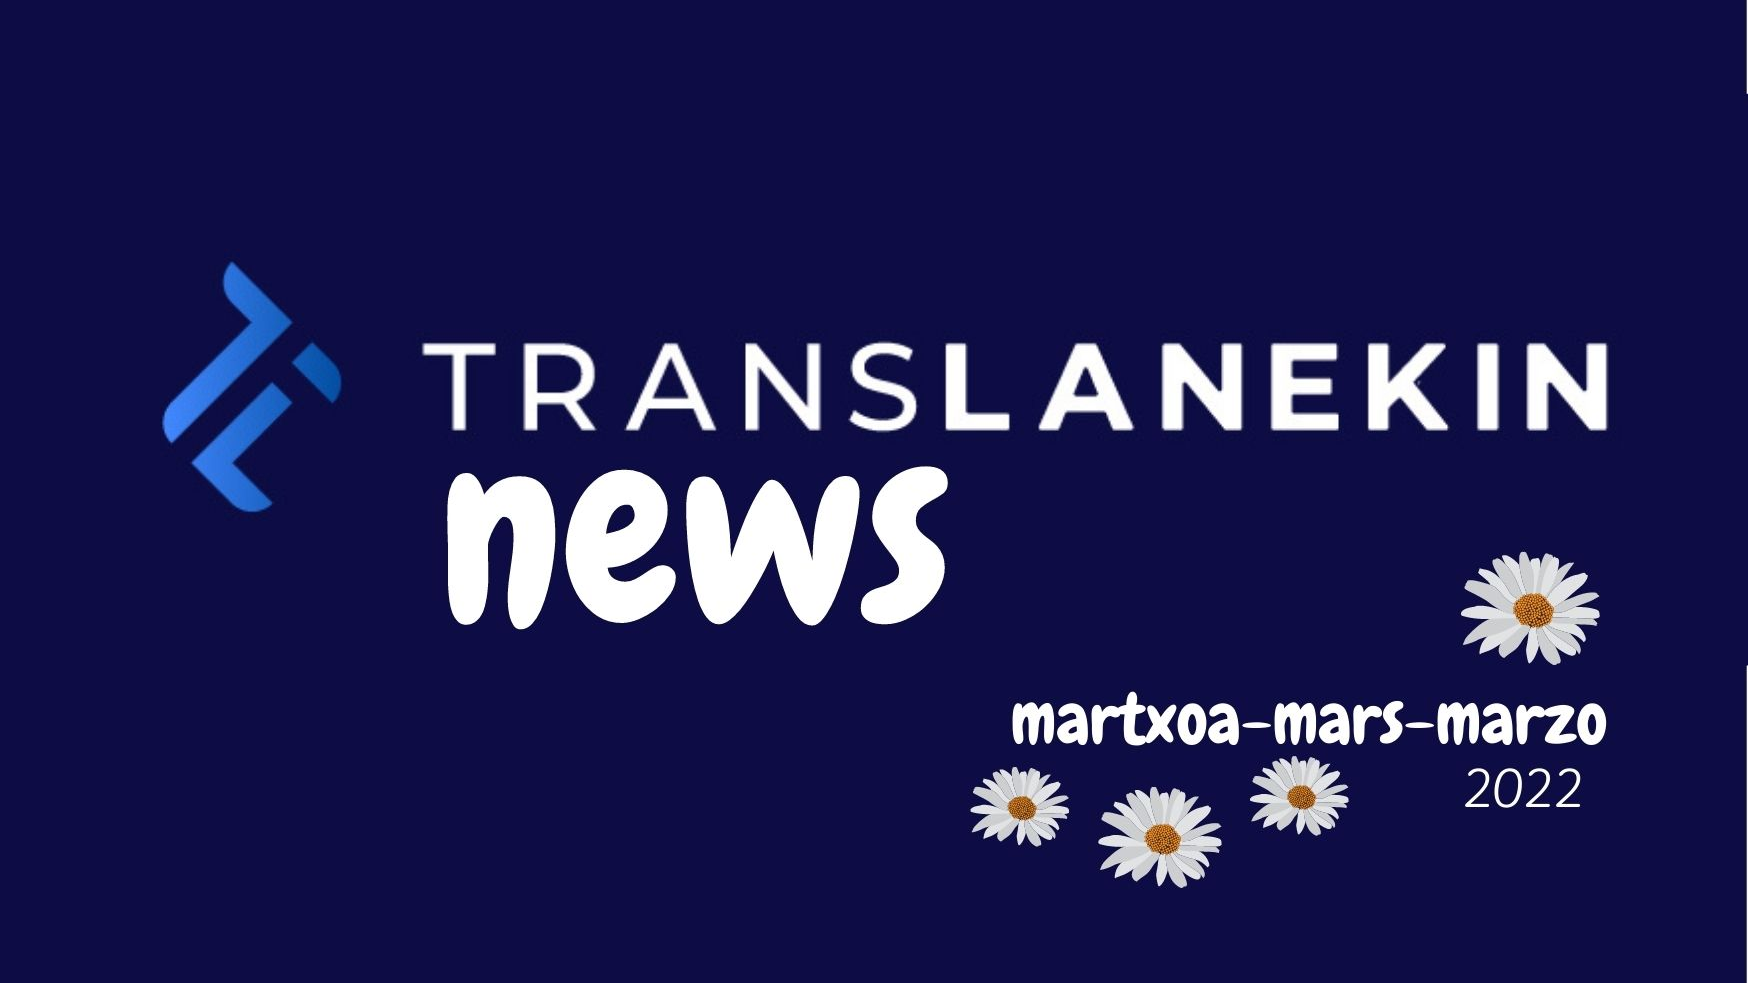 Translanekin newsletter